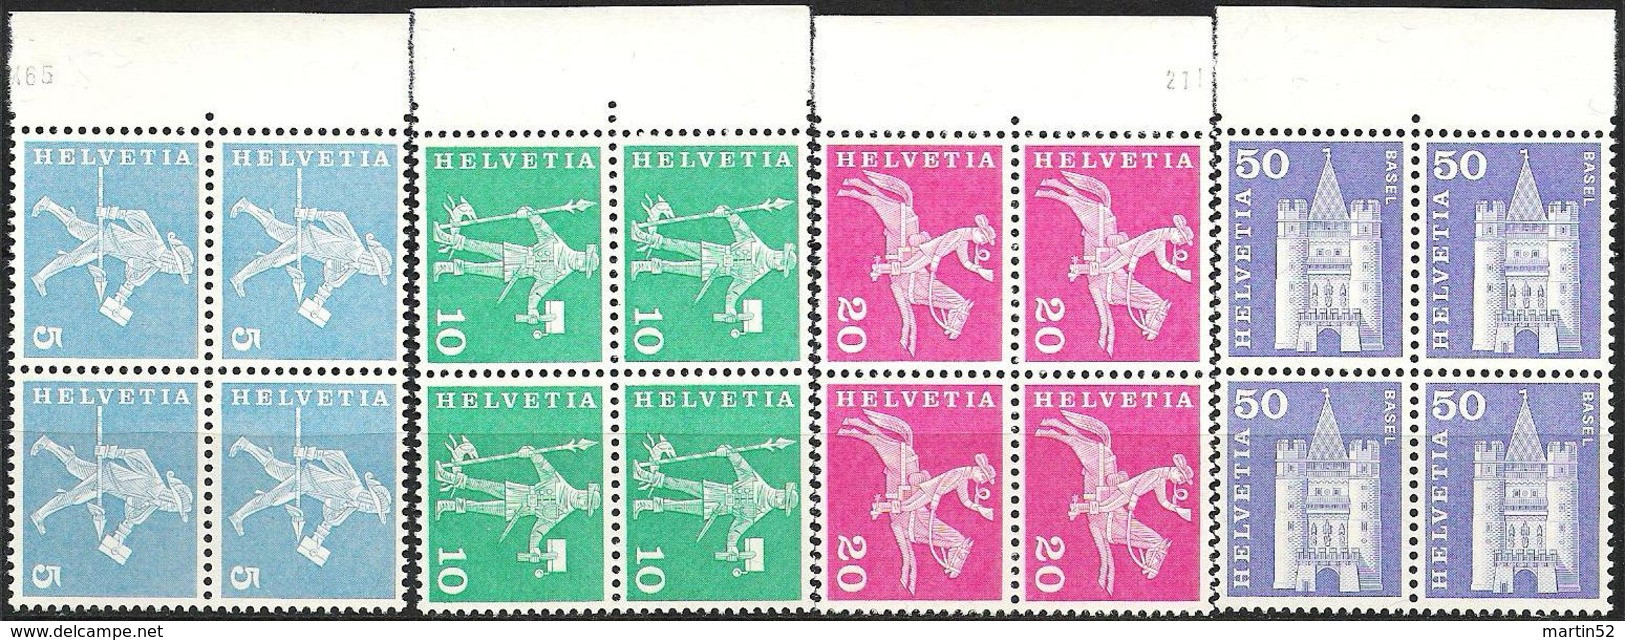 Schweiz Rollen Suisse Rouleaux Swiss Coils 1960: Zu 355R/363R Mi 696R/704R Block ** Postfrisch MNH (Zumstein CHF 50.00) - Coil Stamps